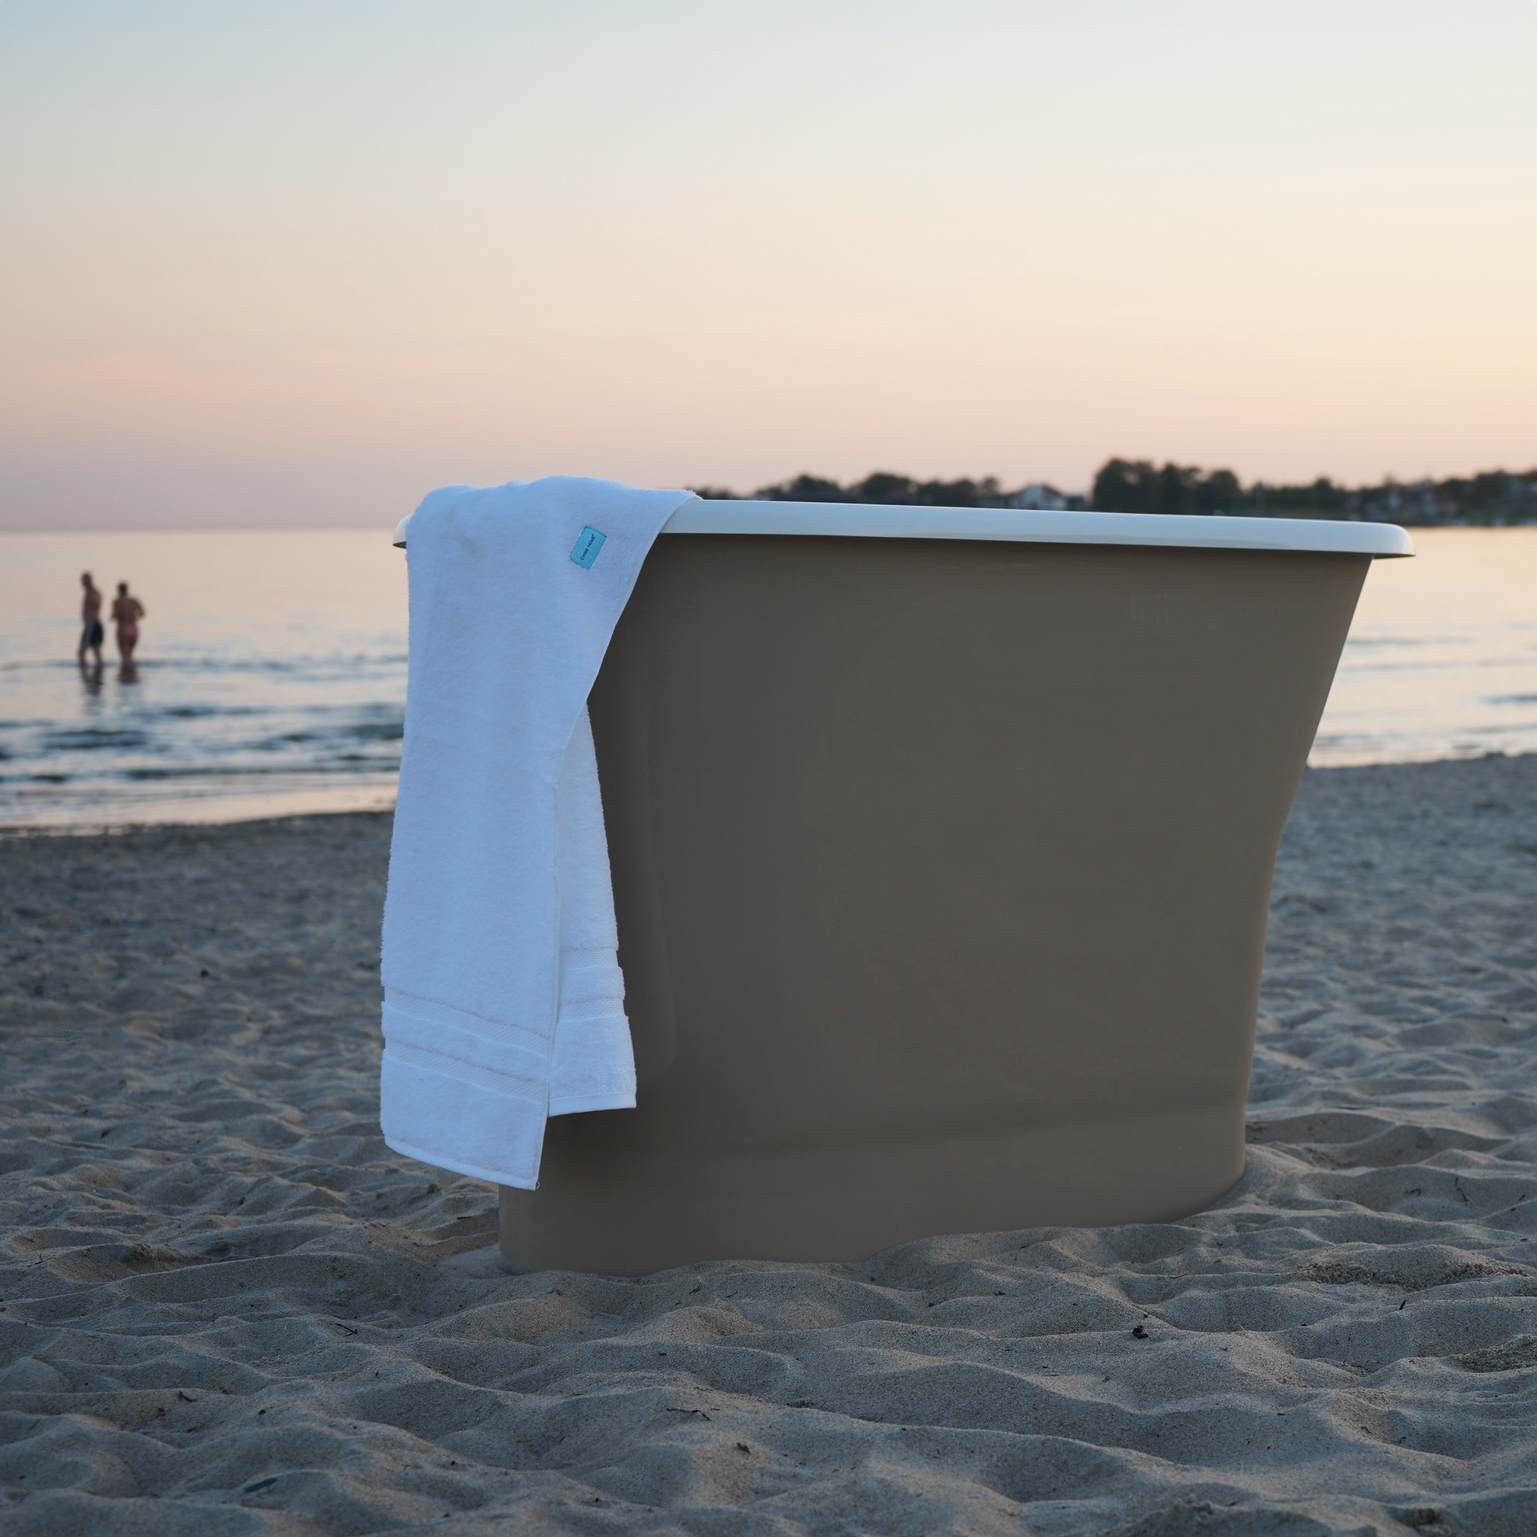 Monaco sittbadkar, vitt inuti och beige utsida, ståendes på en sandstrand. Från varumärket LH, Sanova.